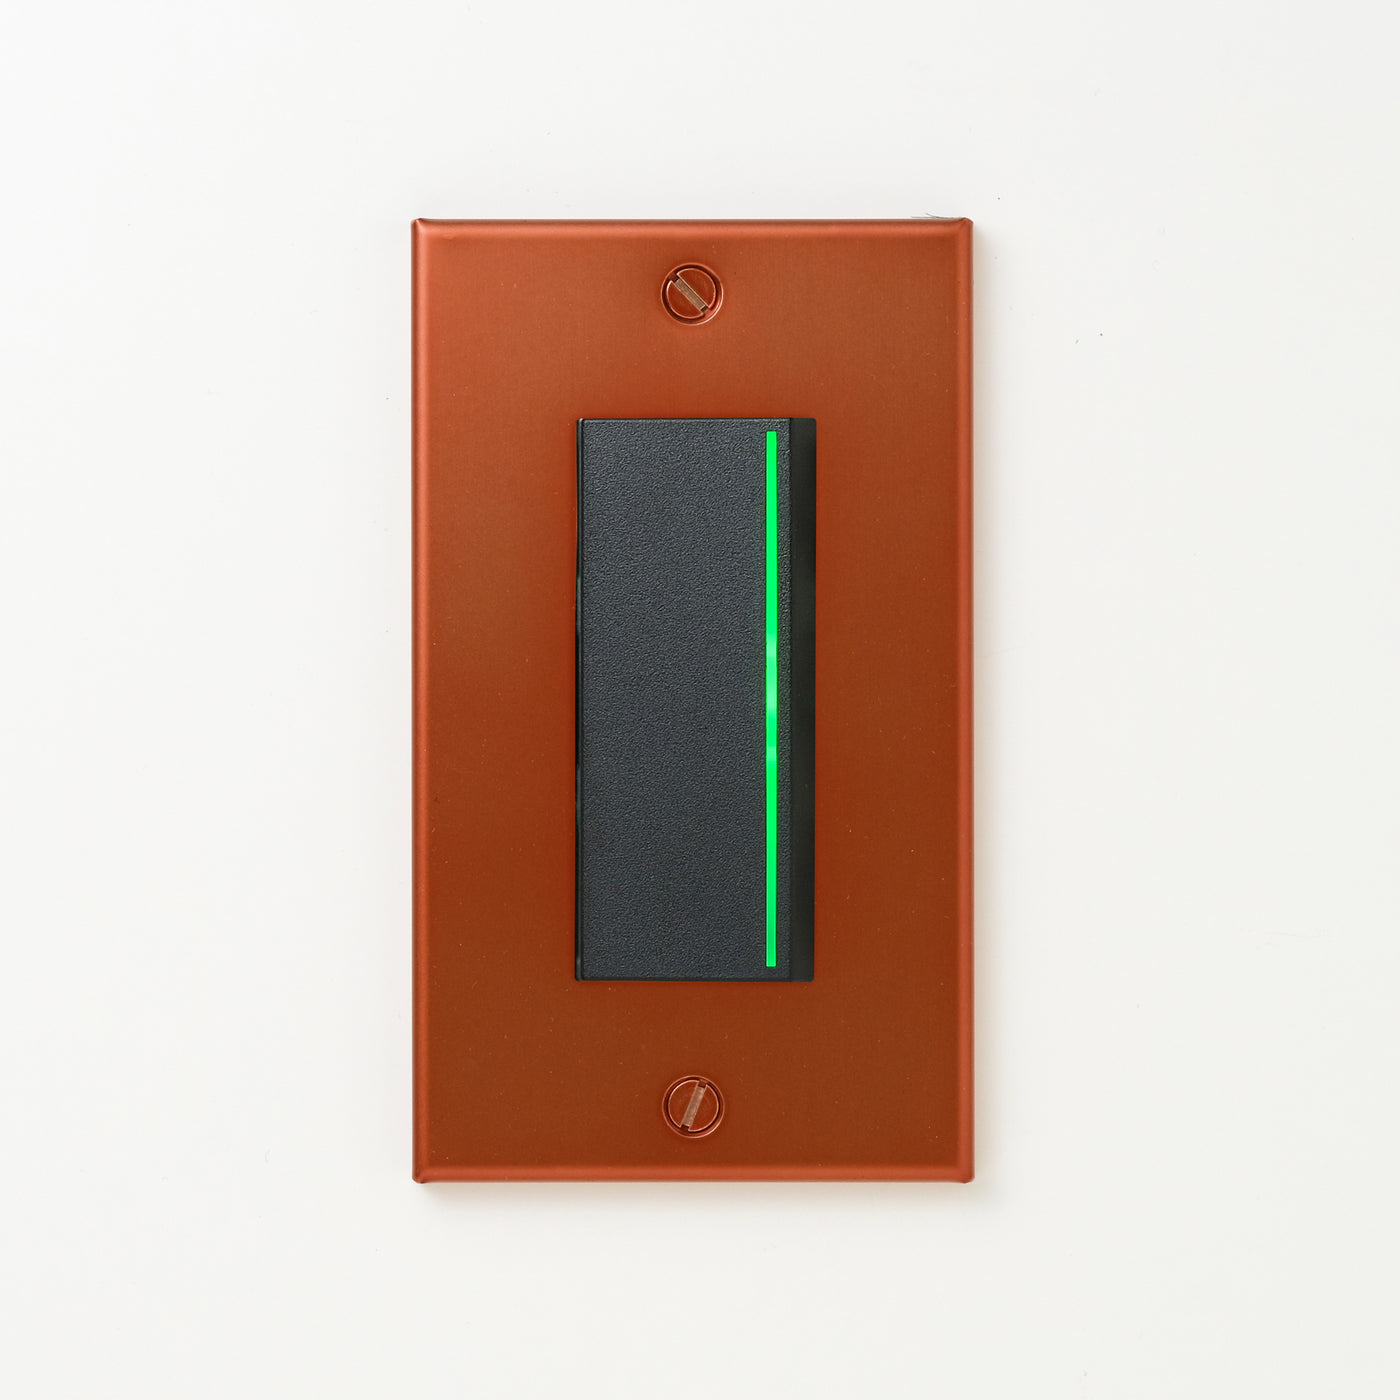 銅色（磨き） プレート <br>+ NK 片切、3路ガイドランプ（グリーン）付スイッチシングル  ブラック